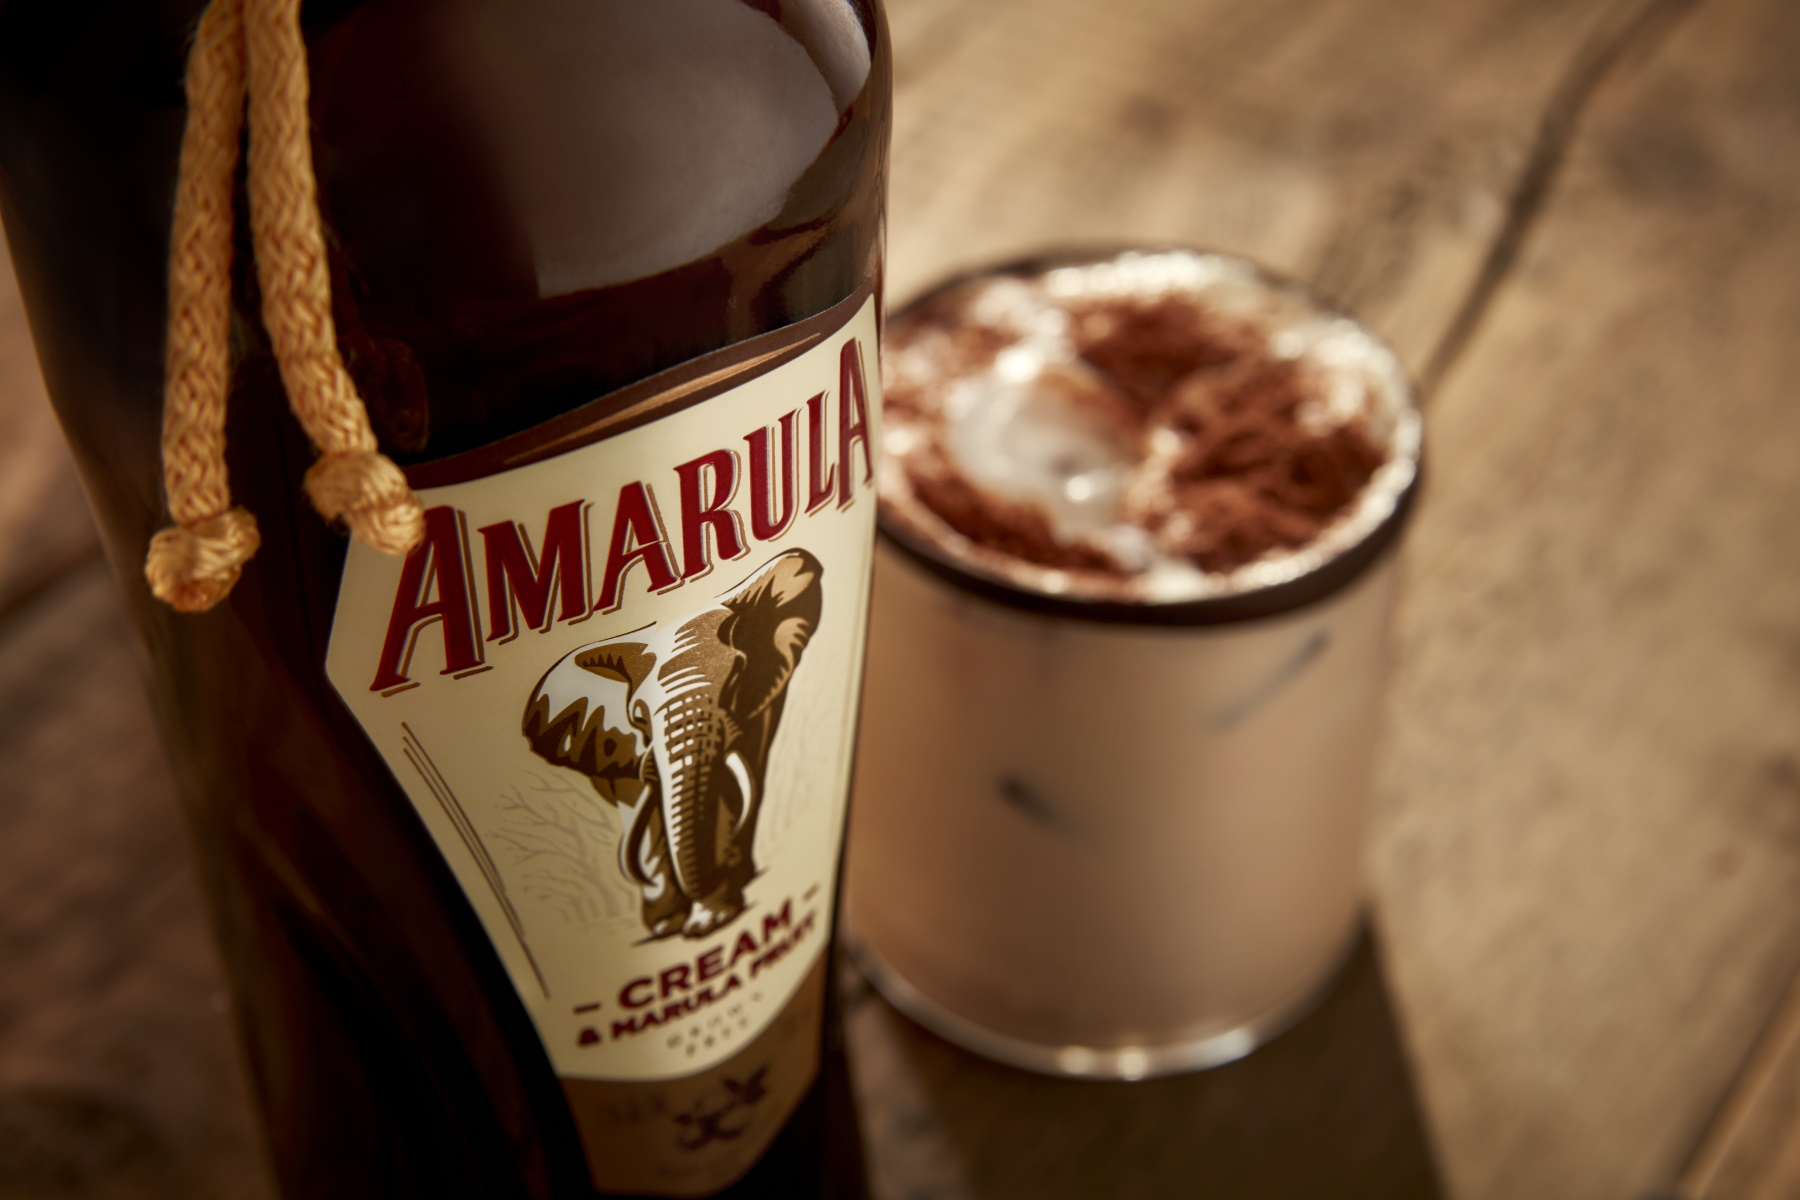 Amarula – Der Cremelikör aus Afrika